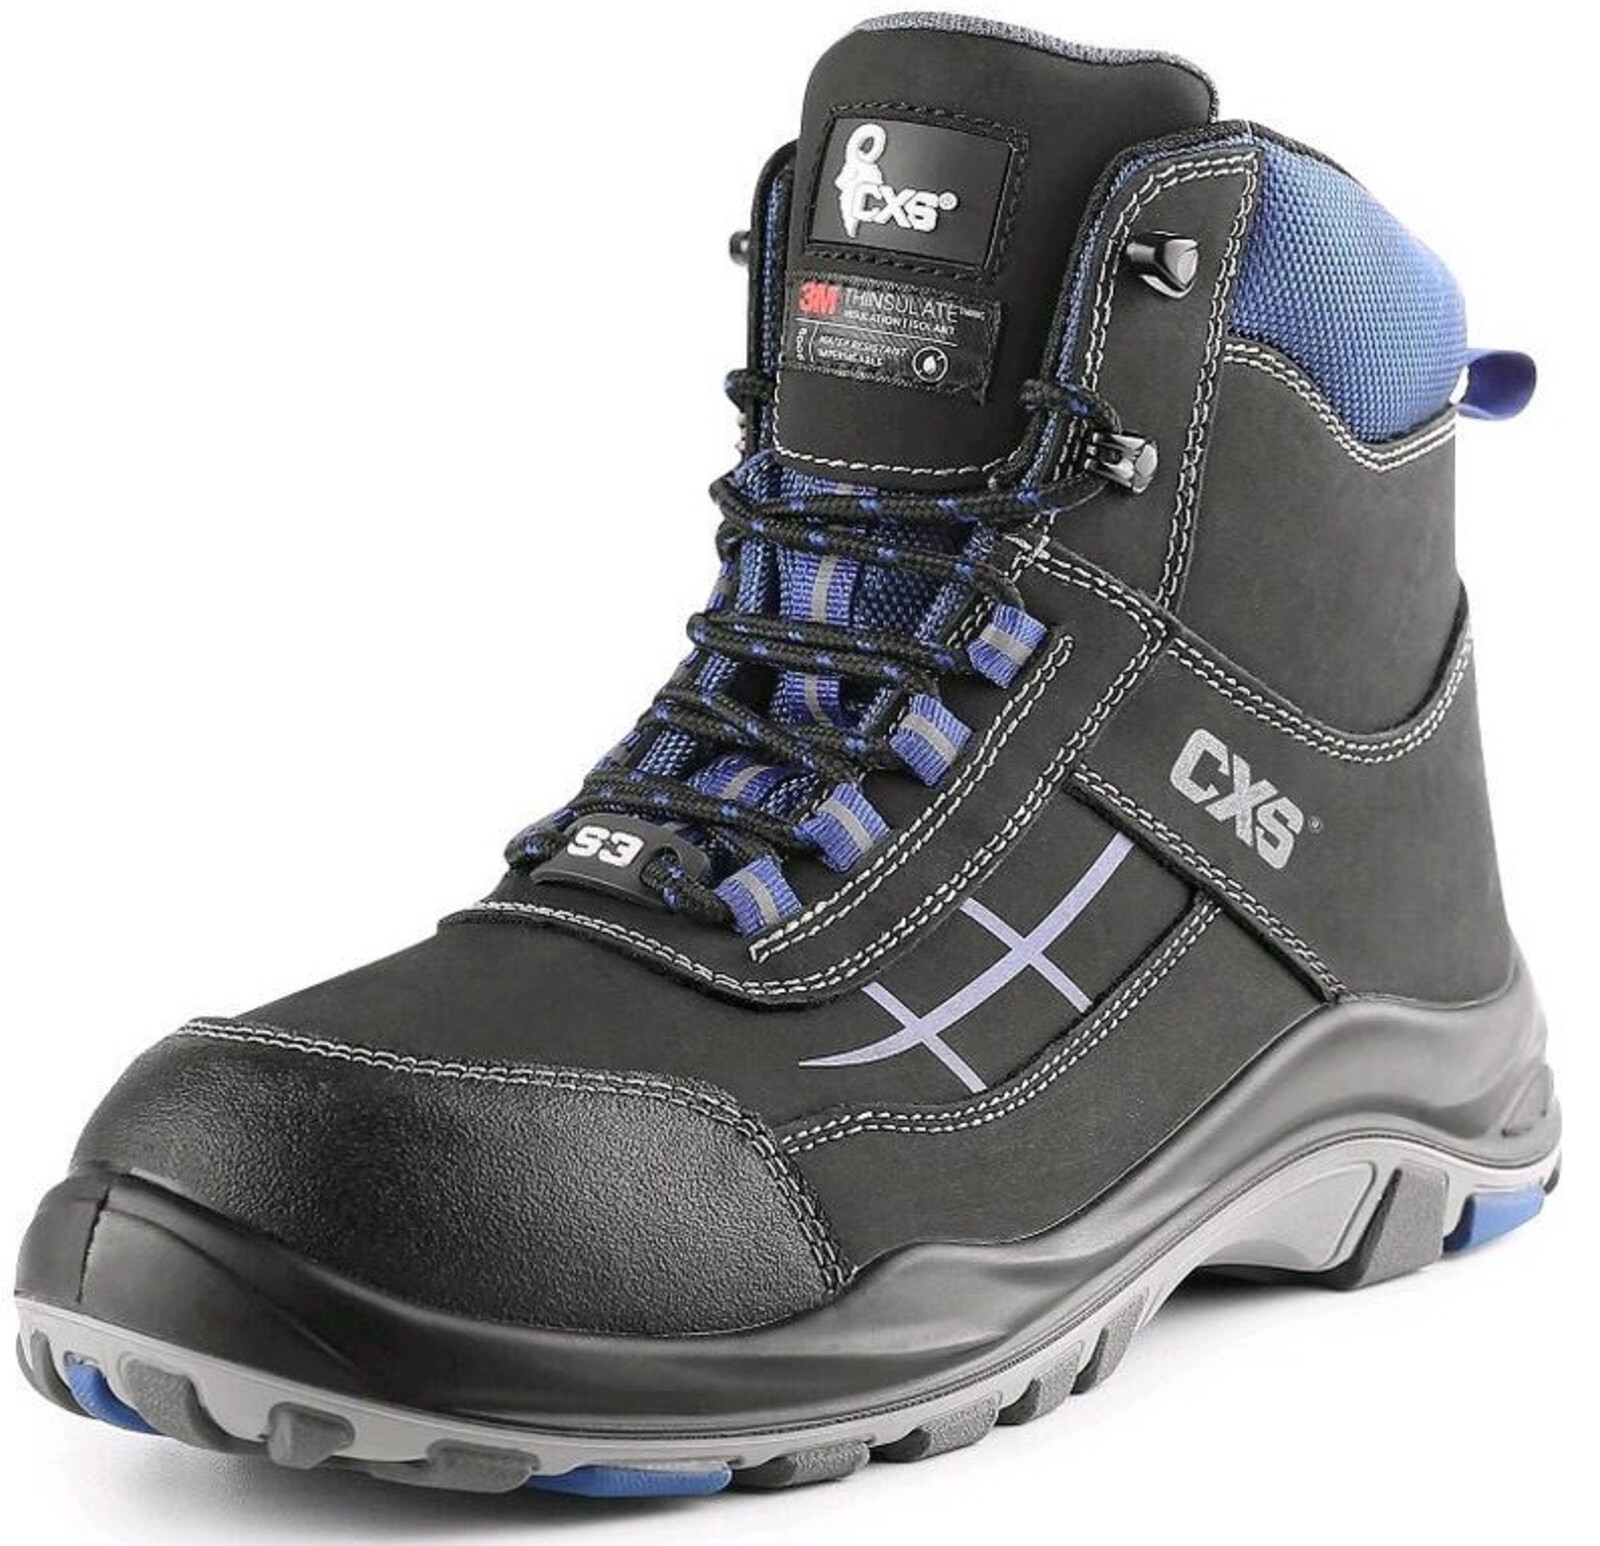 Zateplená bezpečnostná členková obuv CXS Dog Malamute S3 CI SRC - veľkosť: 45, farba: čierna/modrá